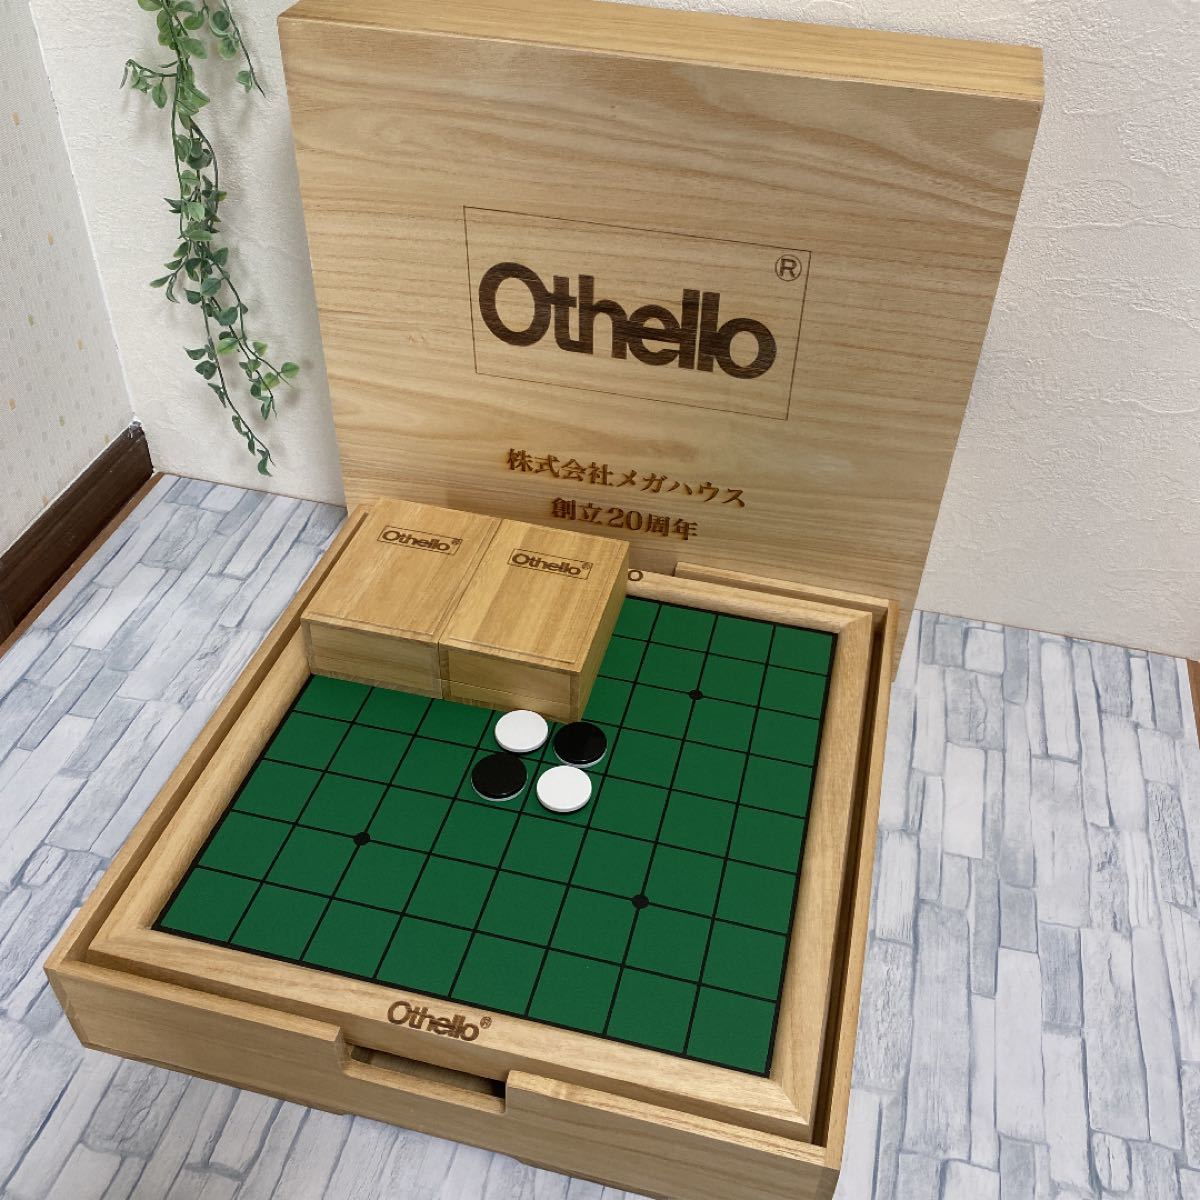 人気激安 非売品 高級オセロ 木製箱 ボードゲーム Reachahand Org